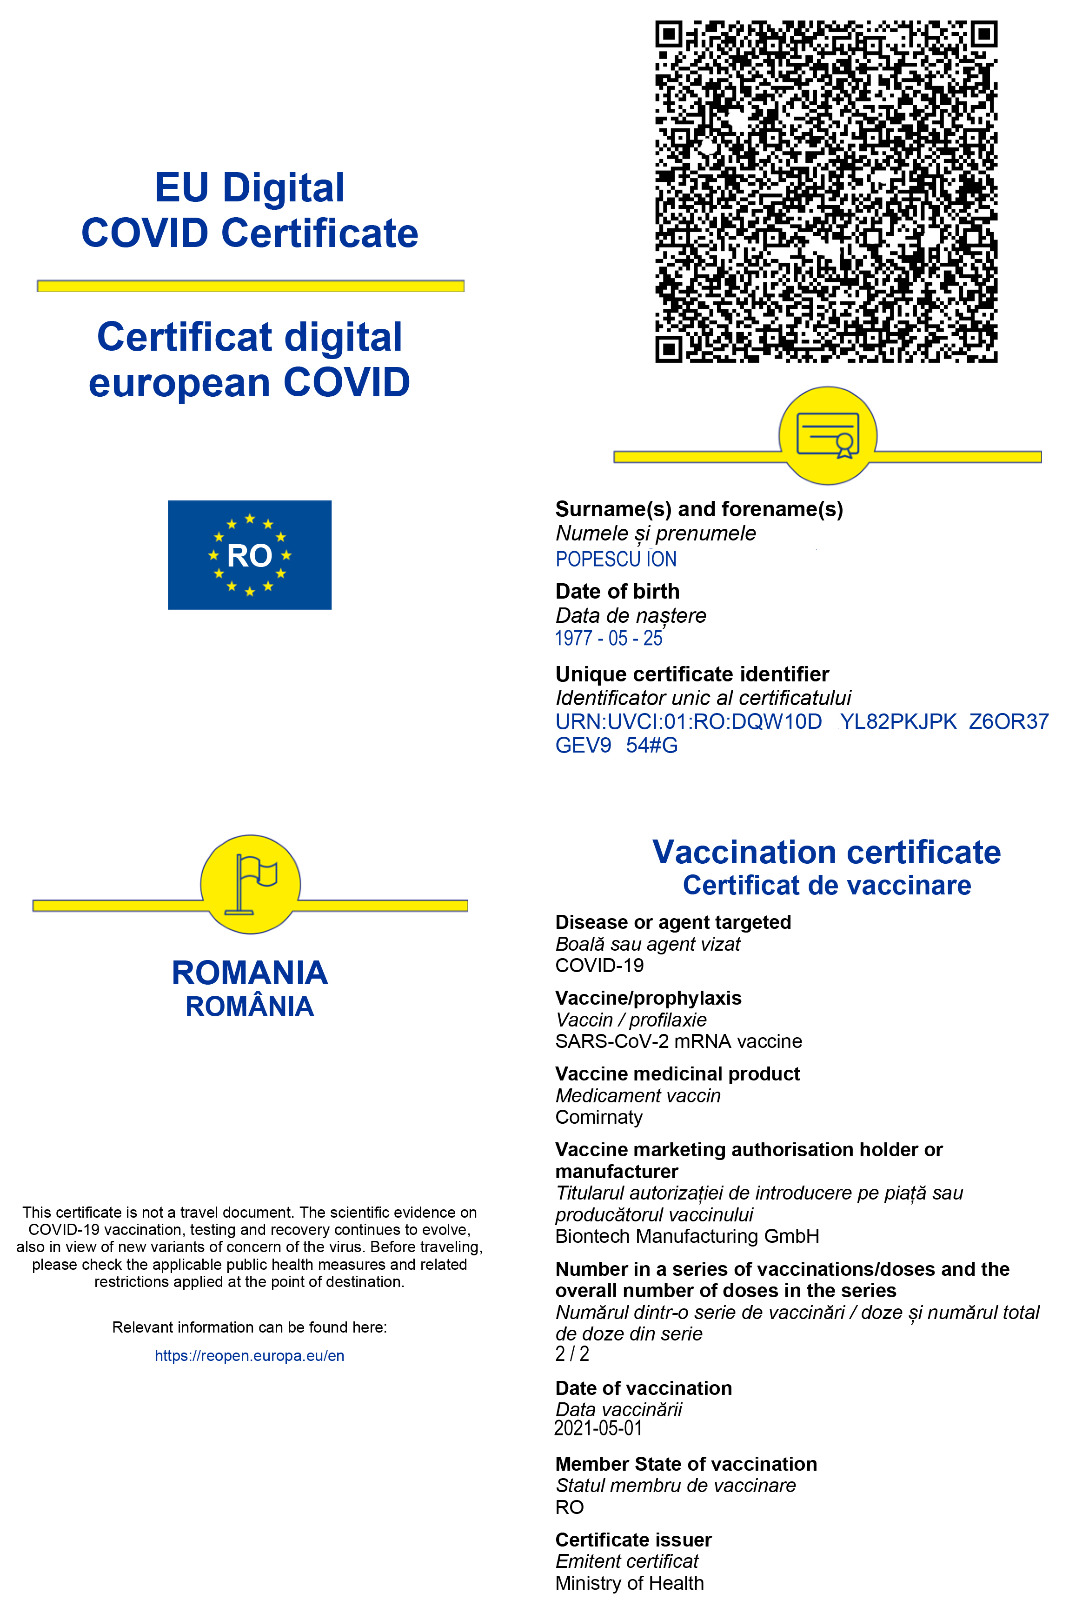 MAI: Scannere mobile pentru verificarea codurilor QR de pe certificatele digitale privind COVID